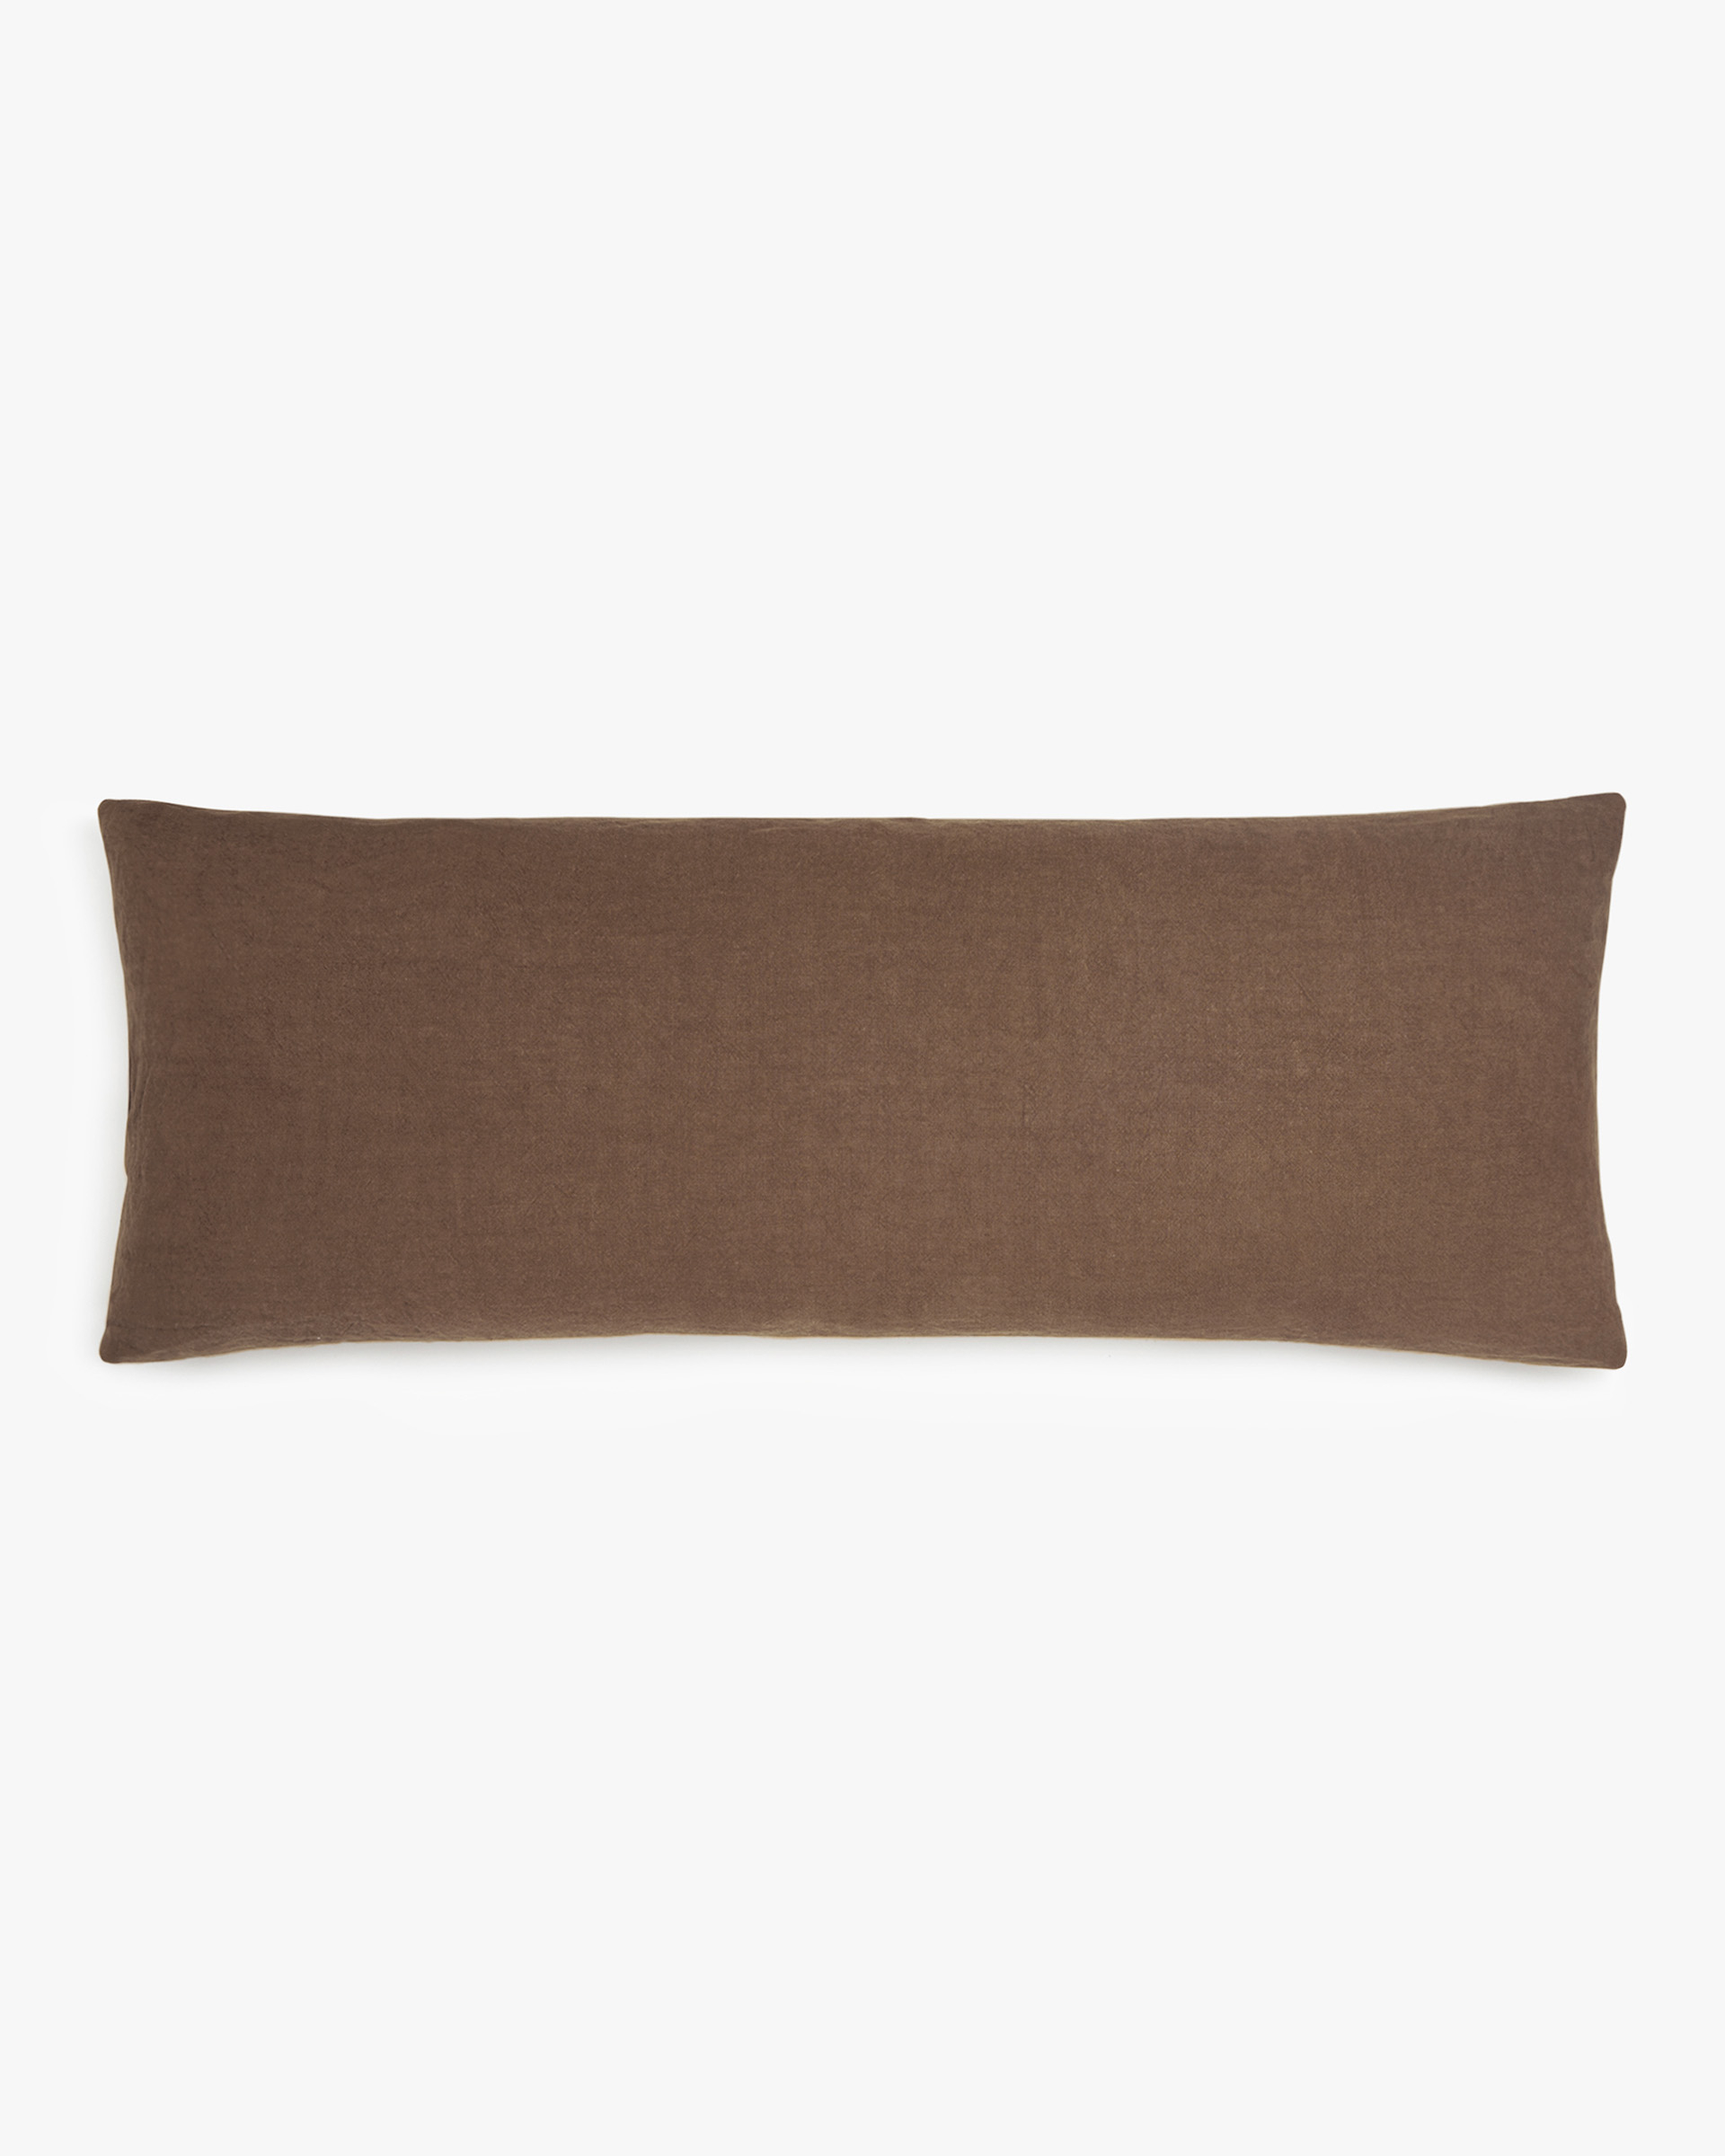 Nomad Lumbar Pillow Cover | Parachute